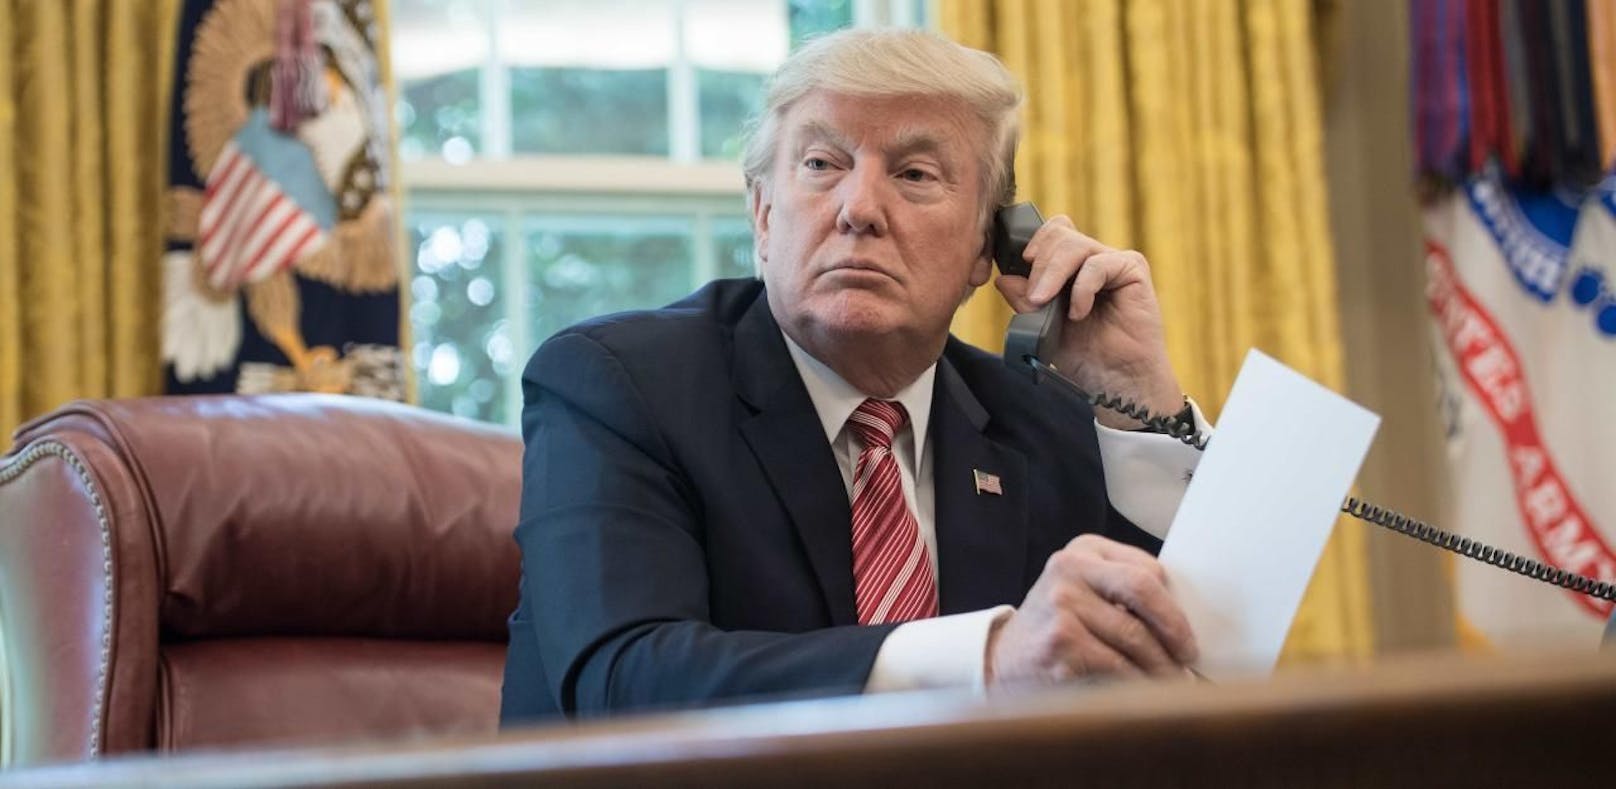 Das Weiße Haus hat das Protokoll des Telefonats von Präsident Trump mit seinem Amtskollegen Selenskyj veröffentlicht.